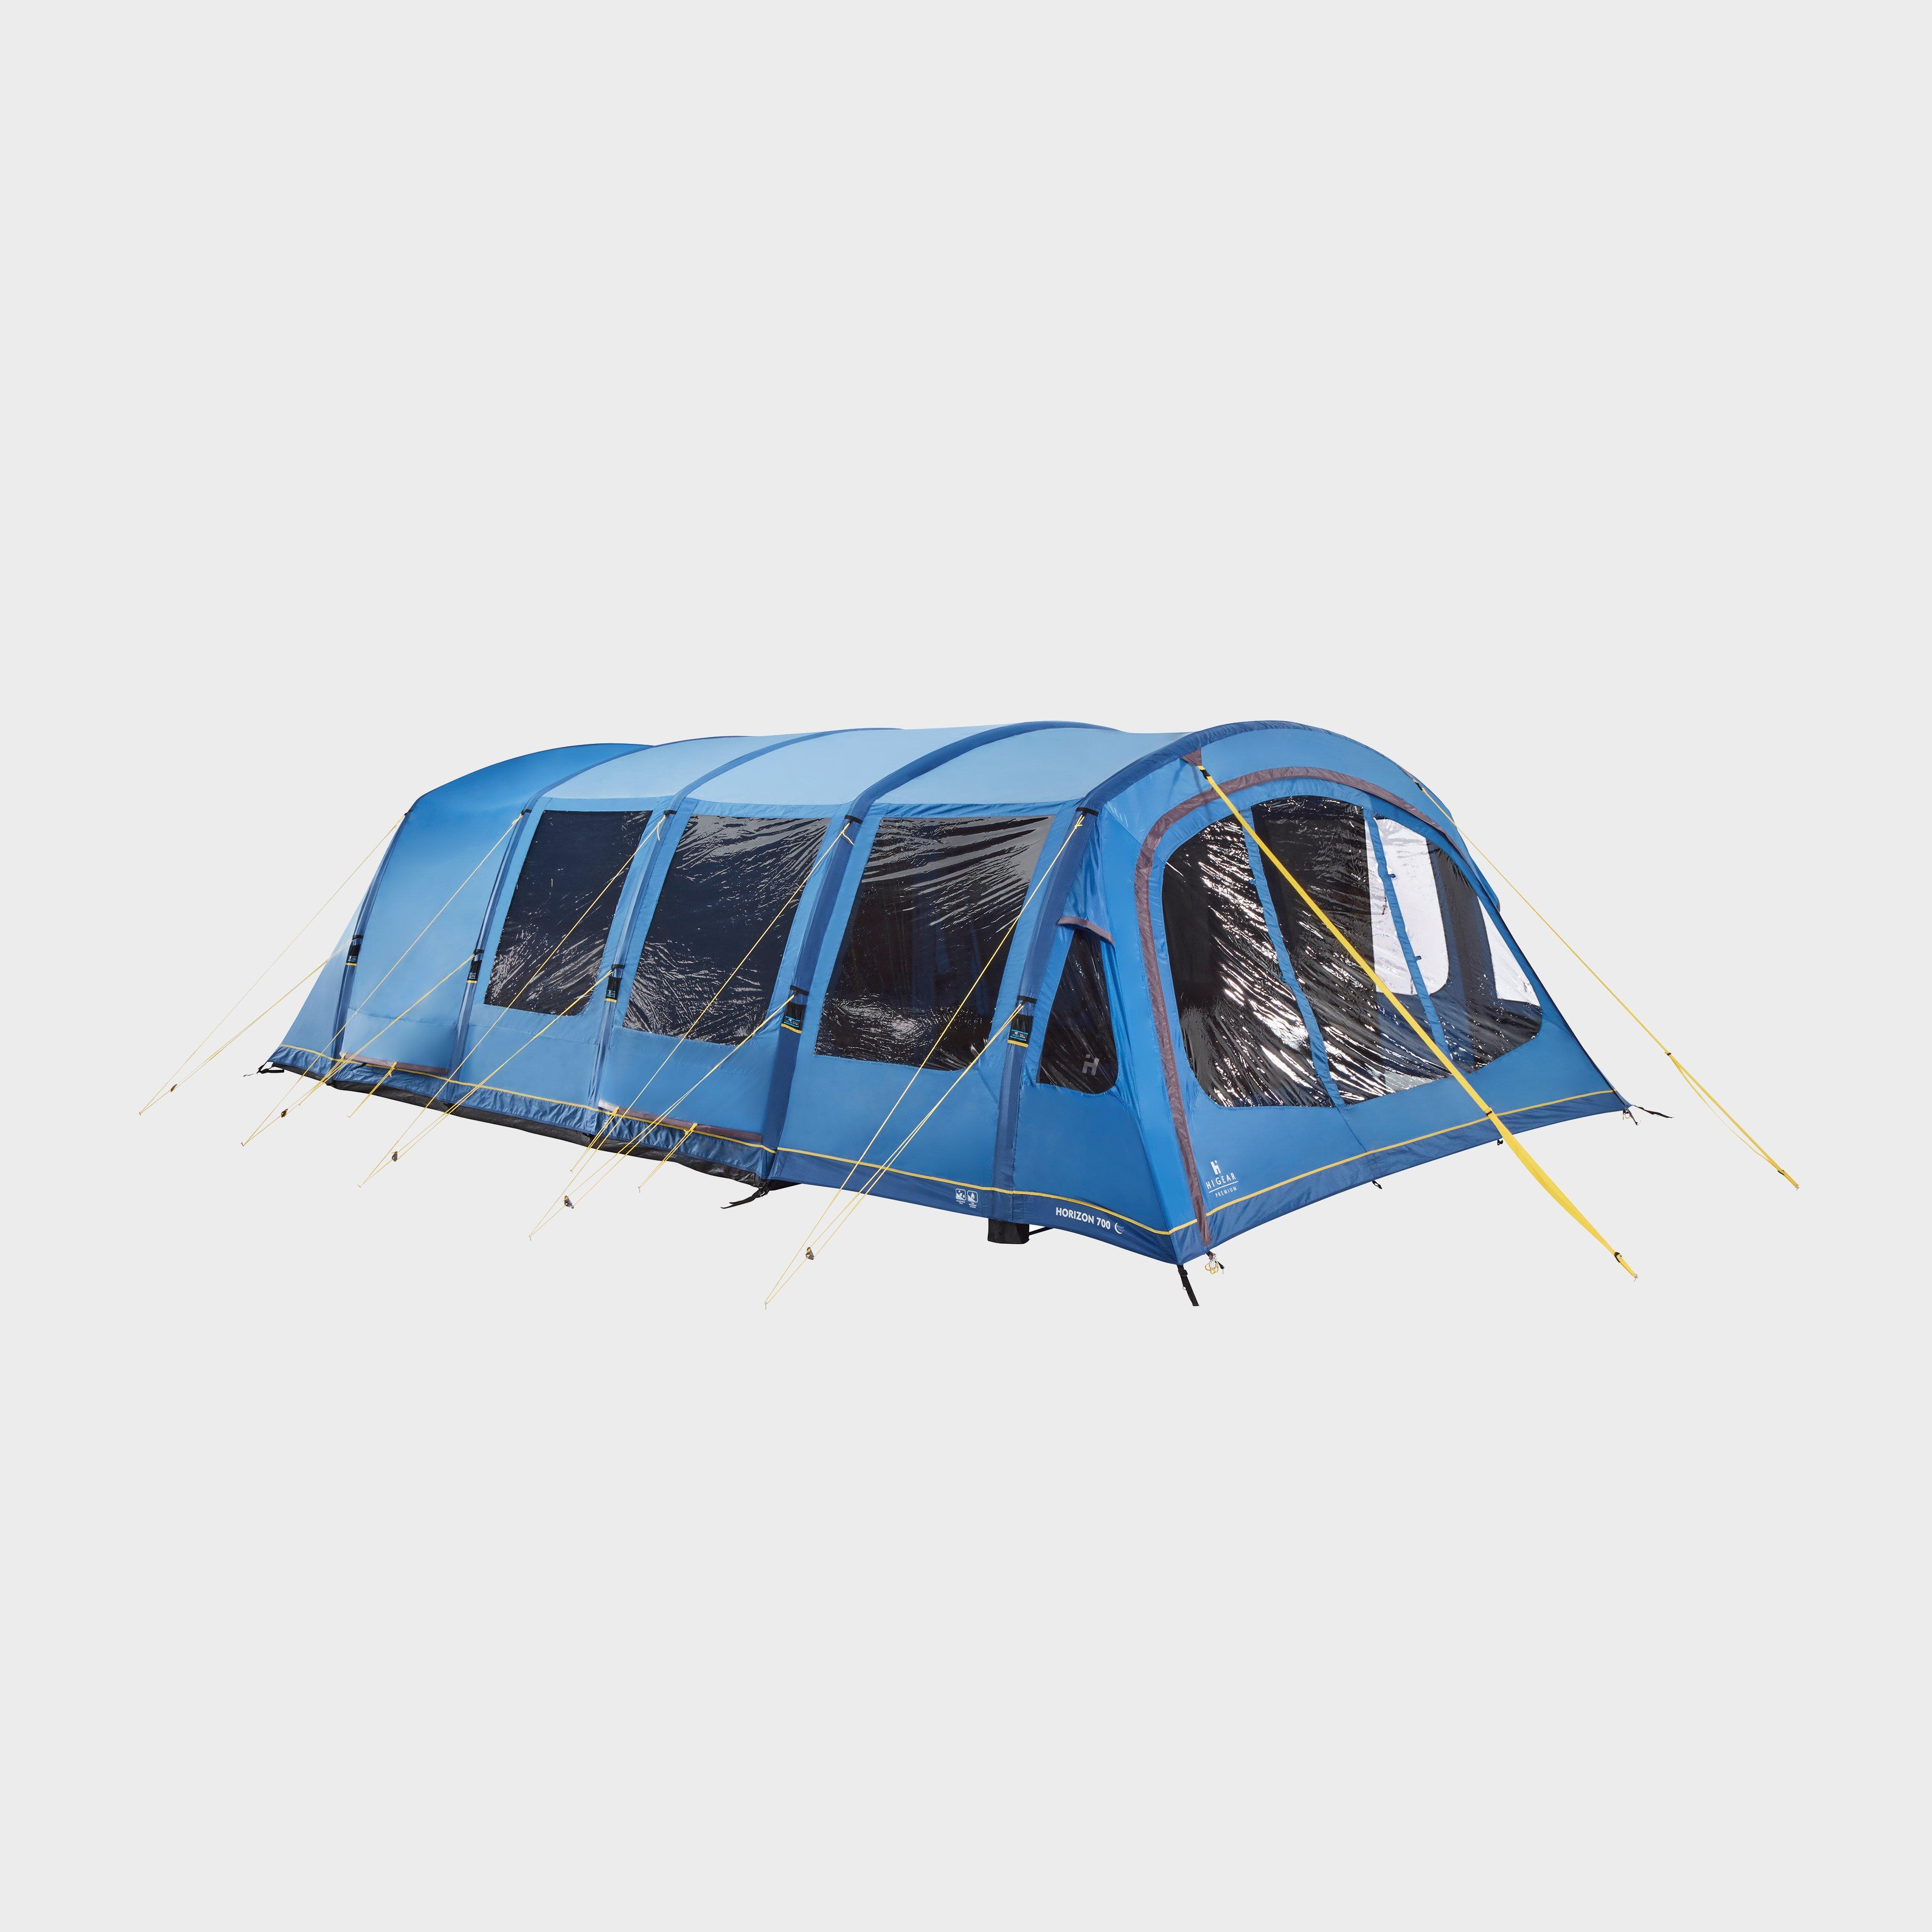  HI-GEAR Horizon 700 Air Nightfall Tent, Blue